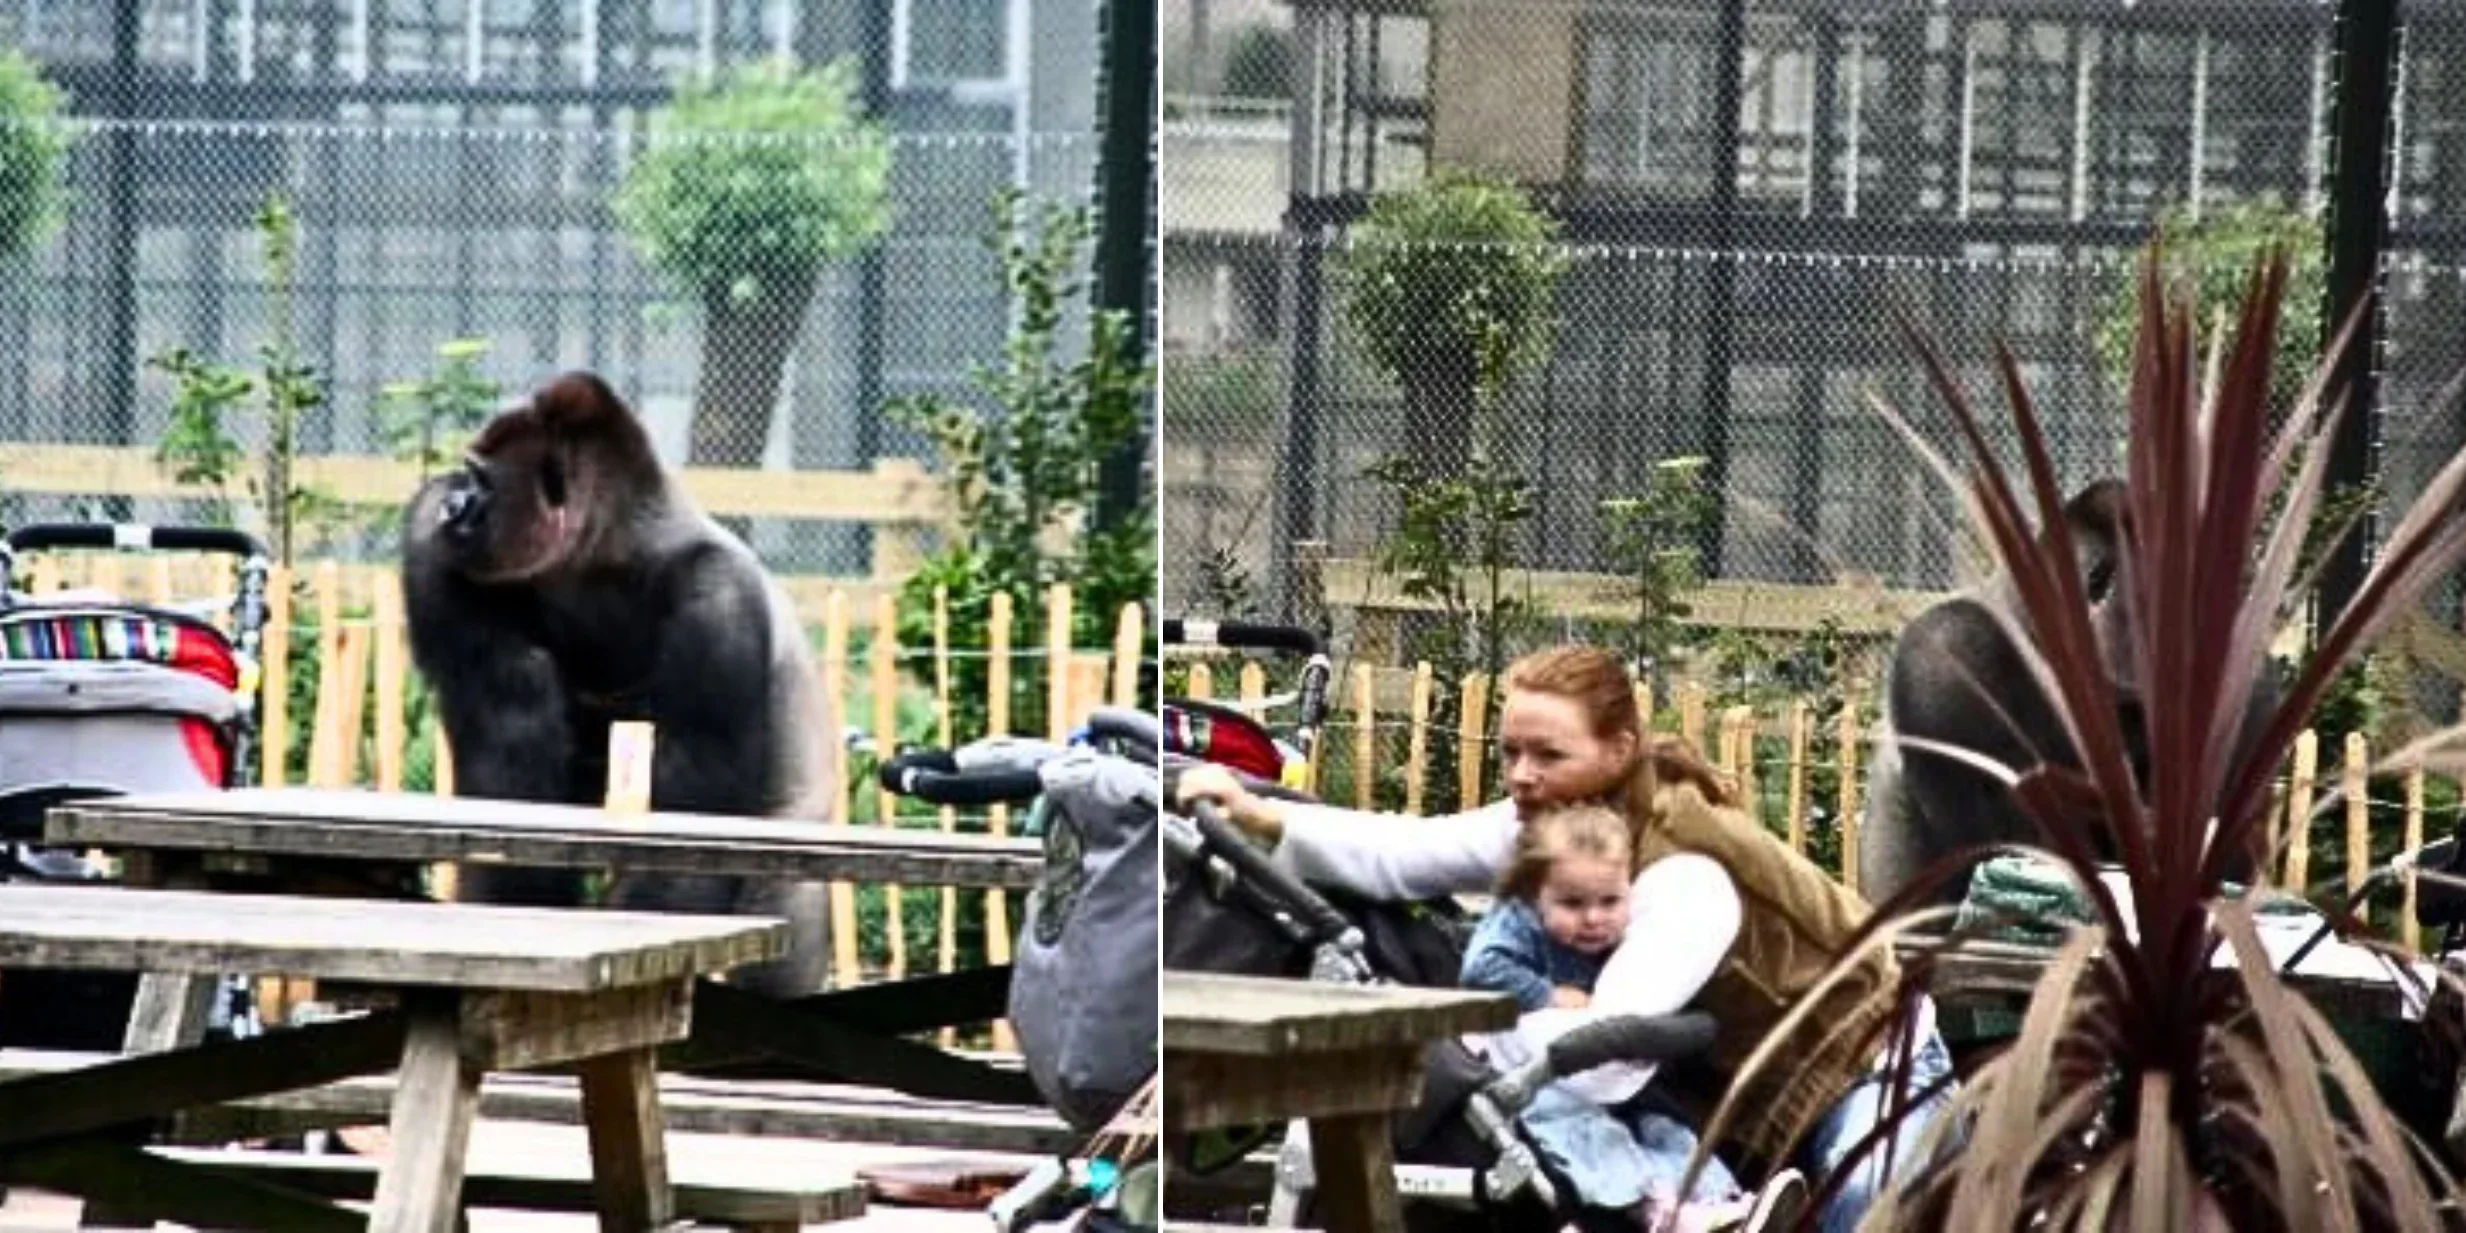 สวนสัตว์เนเธอร์แลนด์แจกแว่นพรางตา ให้นักท่องเที่ยวใส่ชมกอริลลา เพื่อไม่ให้สัตว์รู้สึกถูกคุกคาม